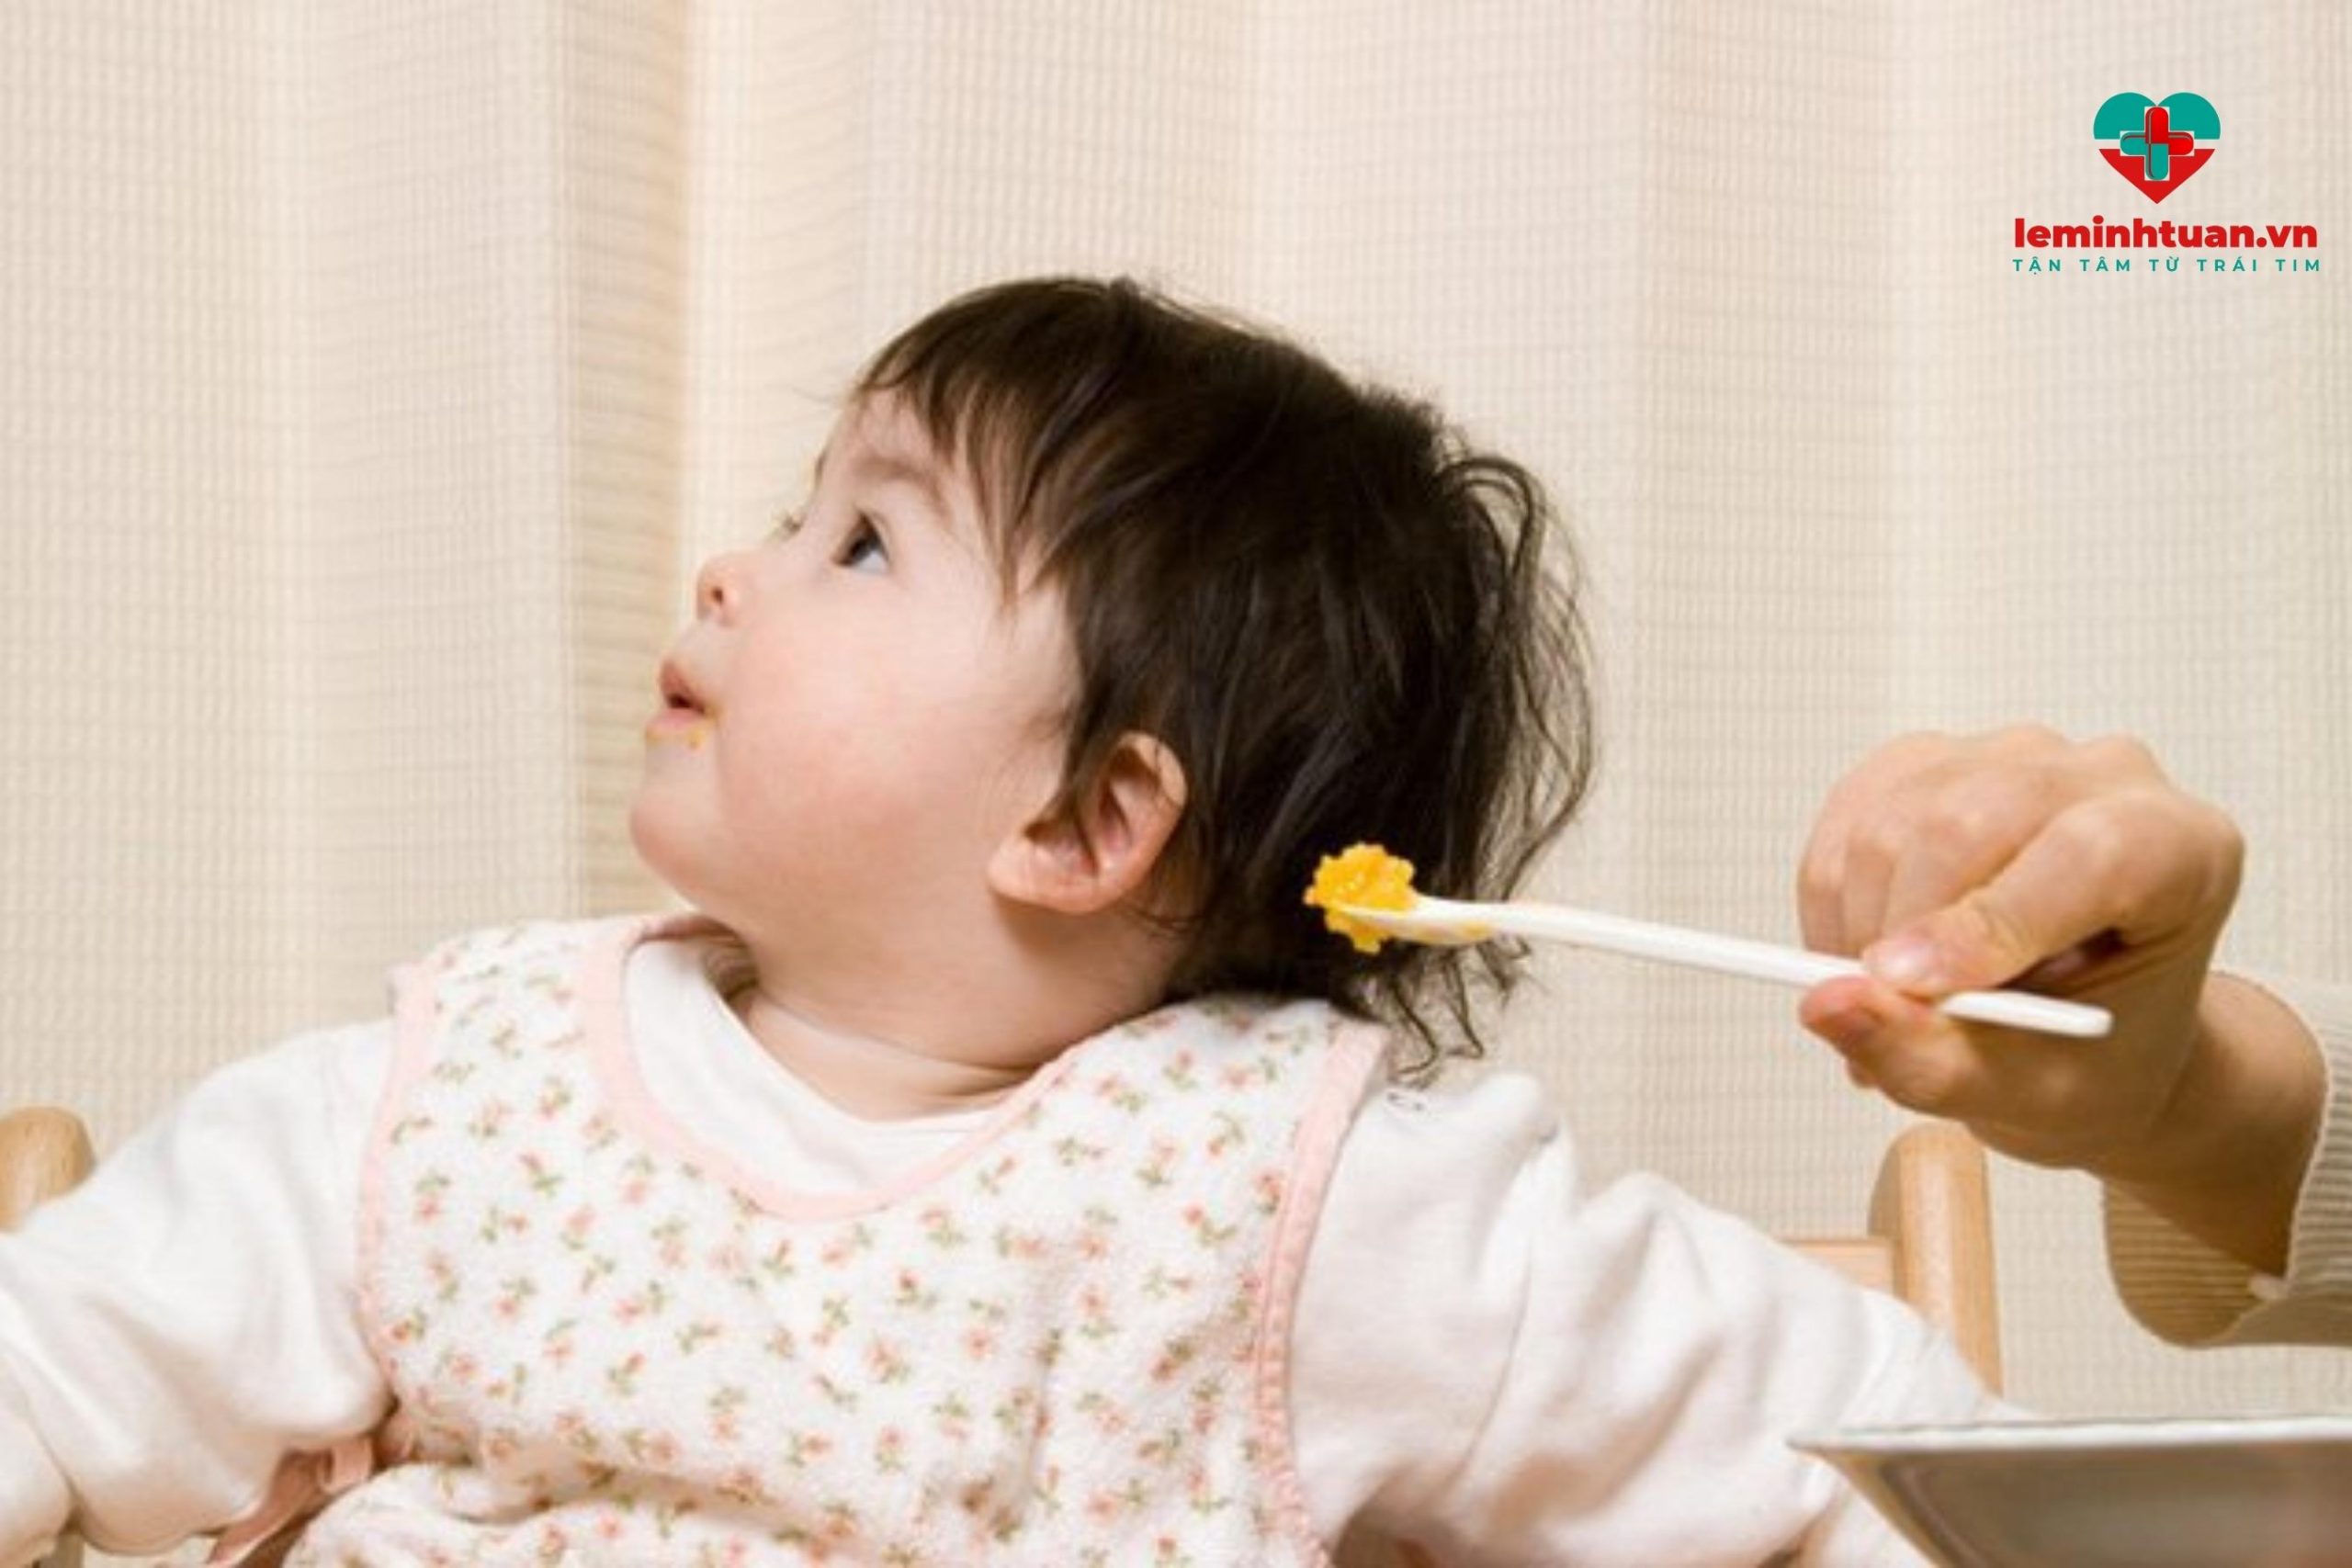 Khắc phục bé ăn ngậm bằng cách không kéo dài thời gian ăn cho bé